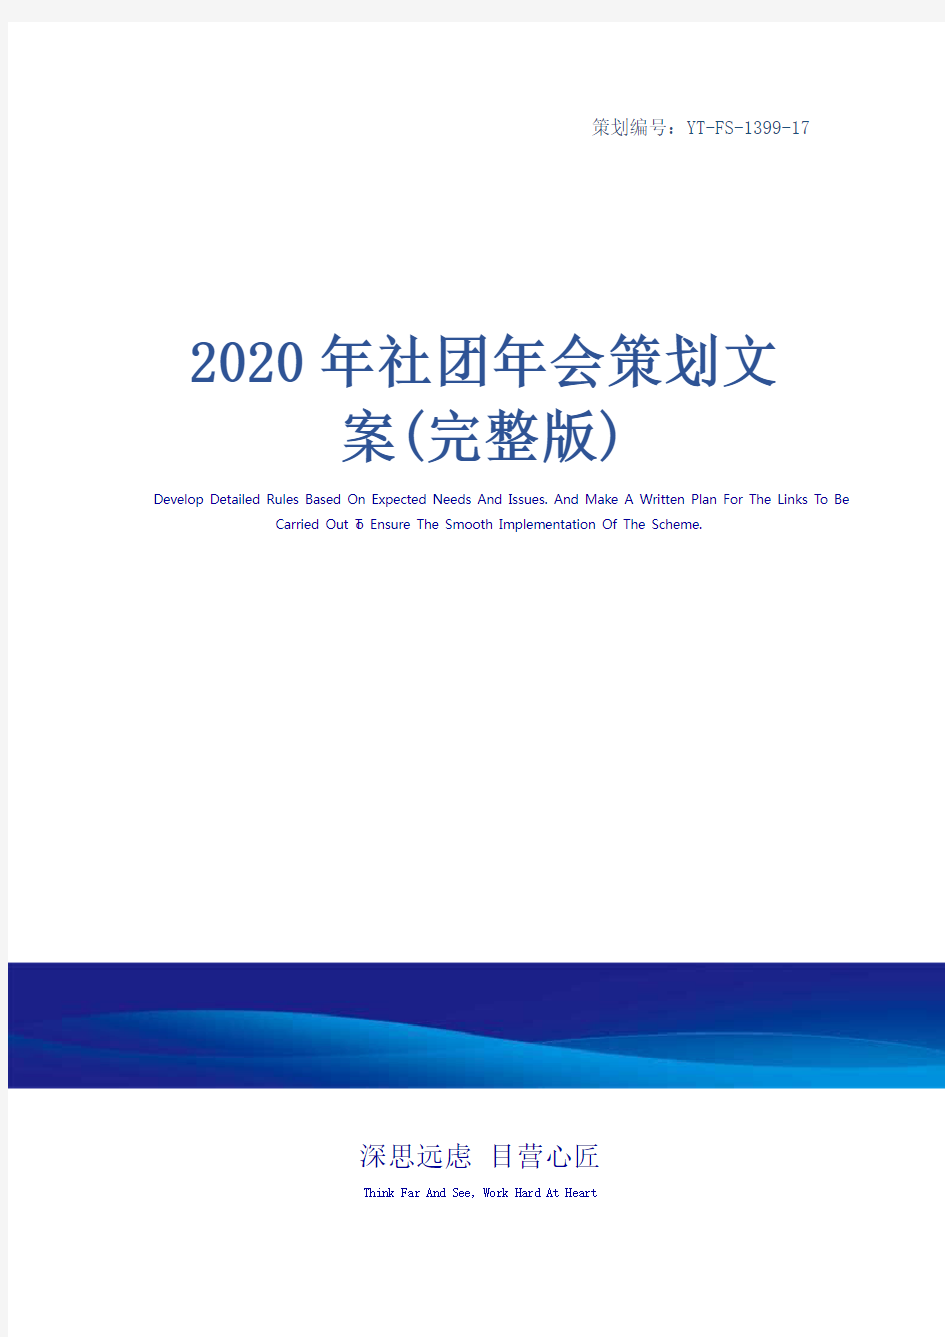 2020年社团年会策划文案(完整版)